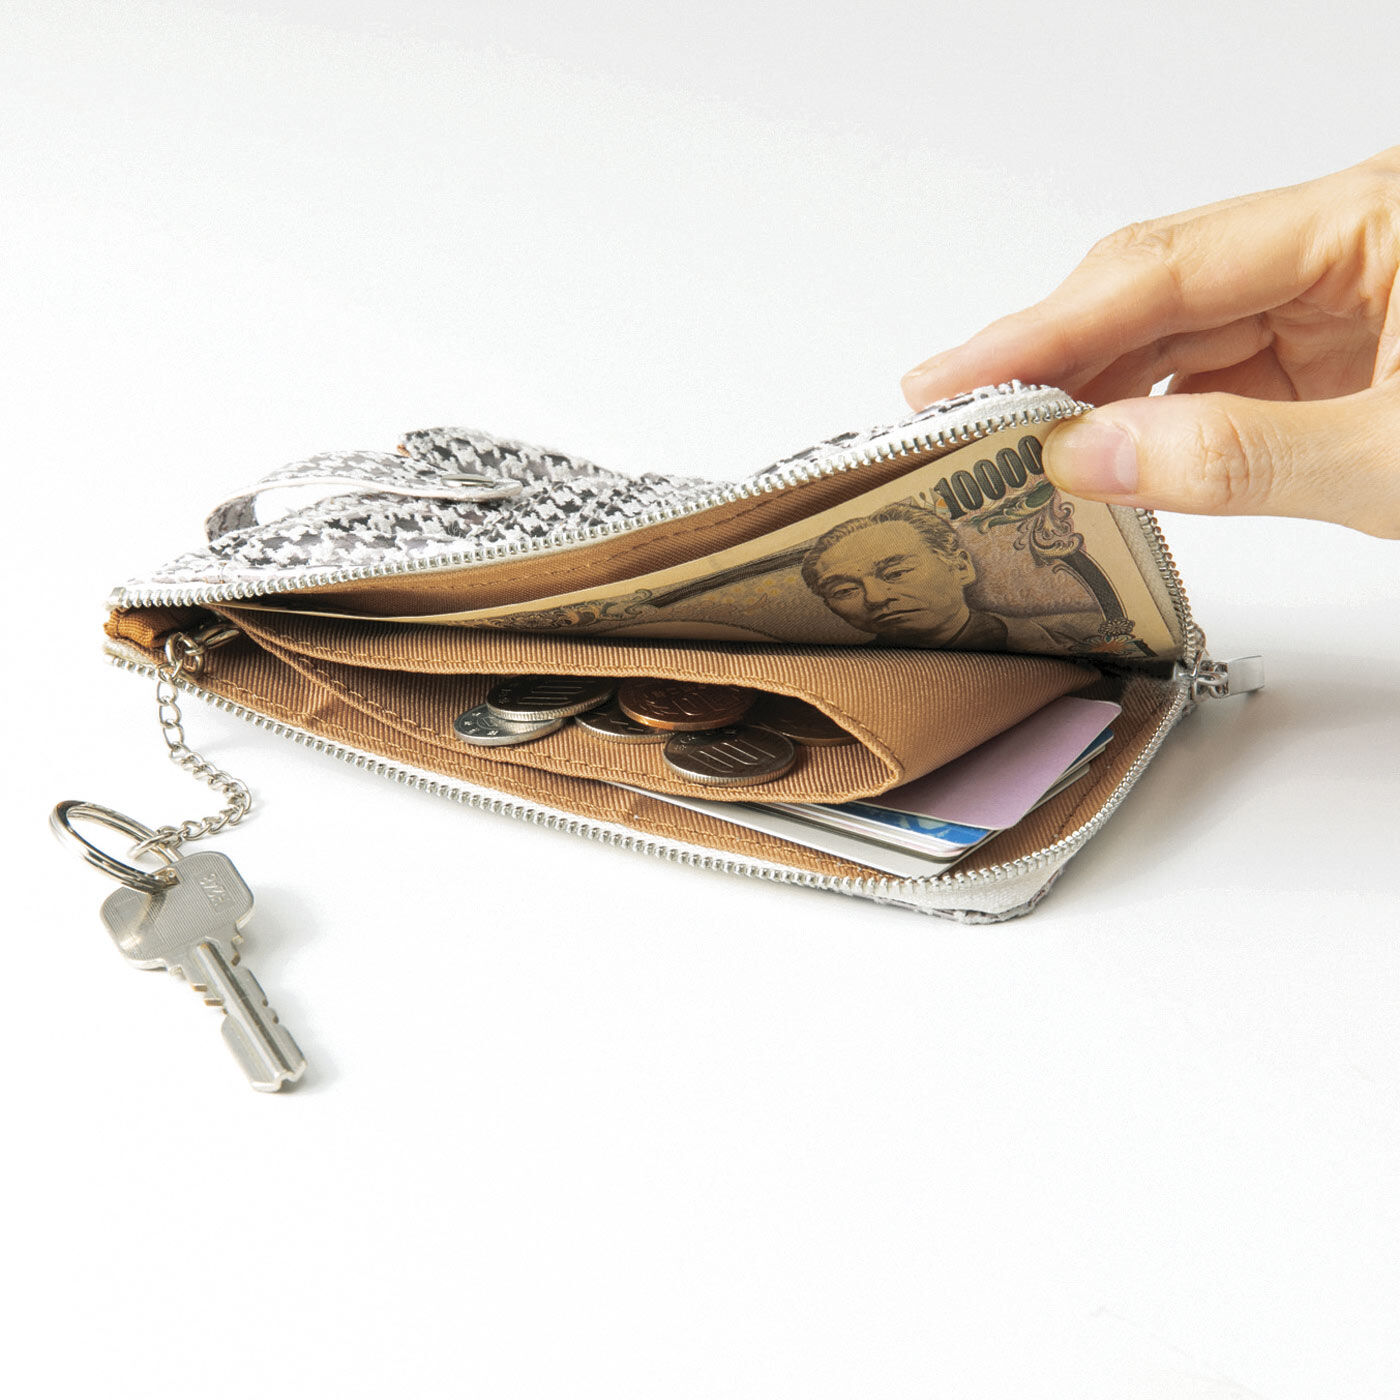 フェリシモの雑貨 Kraso|UP.de　きらめく本革でハッピーを呼ぶ スマホもカードもサッとおさまるコンパクト財布の会|内側にはコイン仕分けポケットと取り外し可能なキーチェーン付き。